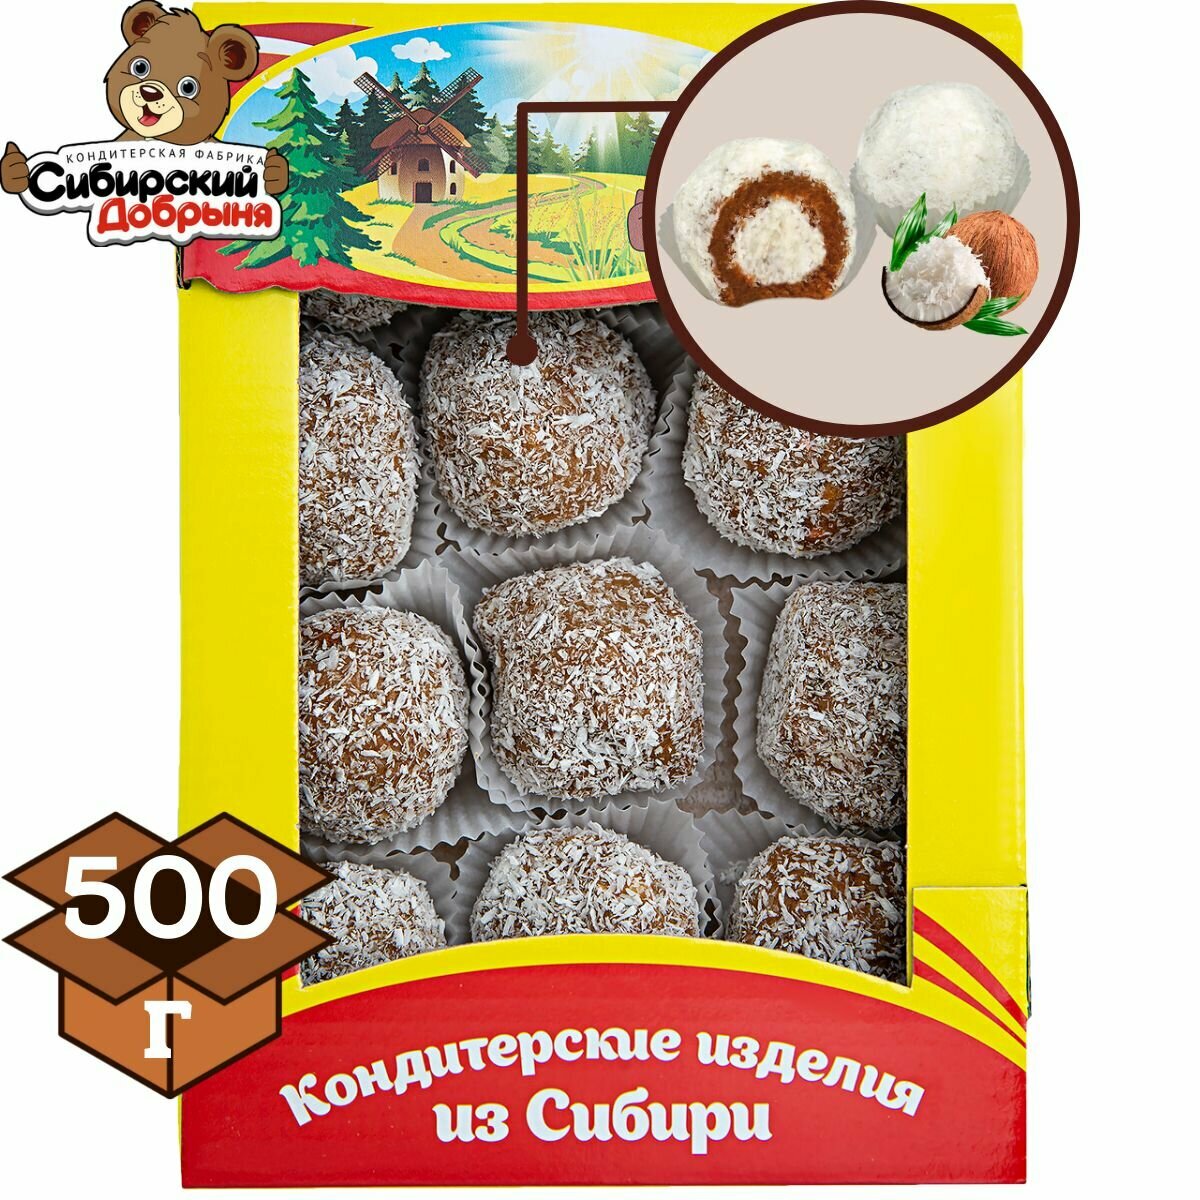 Пирожные крошковые шароцветики с начинкой со вкусом кокоса, 500 грамм , мишка в малиннике , Сибирский добрыня